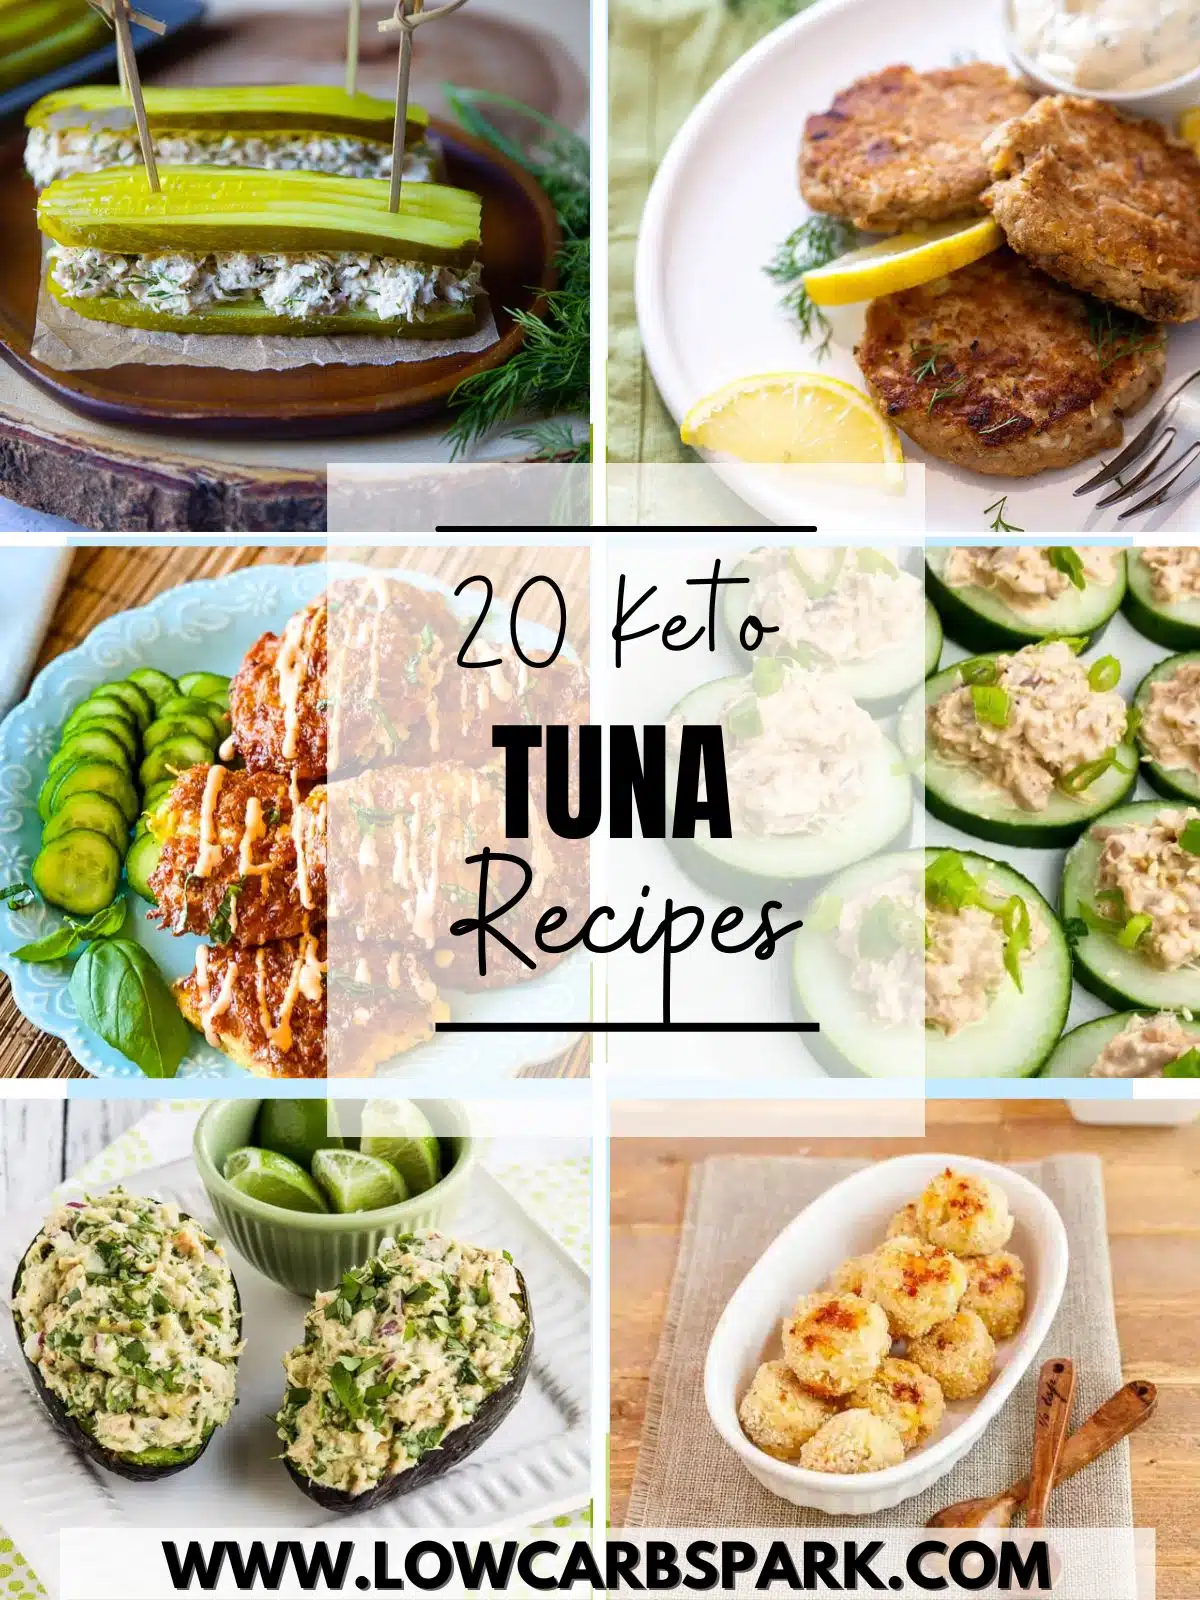 20 Keto Tuna Recipes - Best Low Carb Tuna Recipes